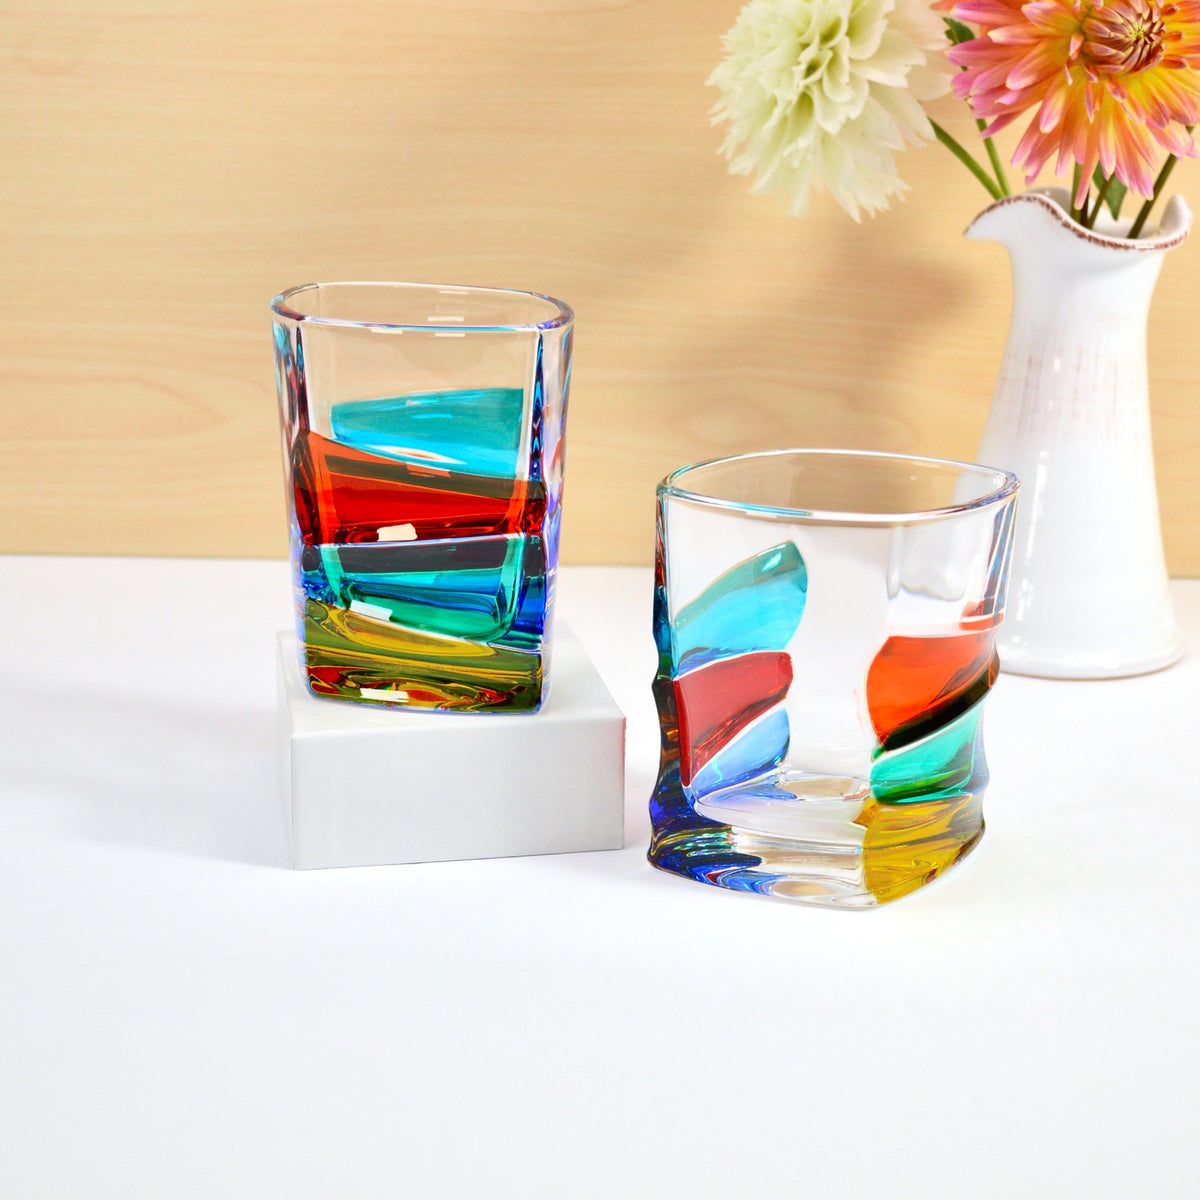 Italian Crystal Vela Whiskey Glasses, Set of 2, Made in Italy - My Italian Decor